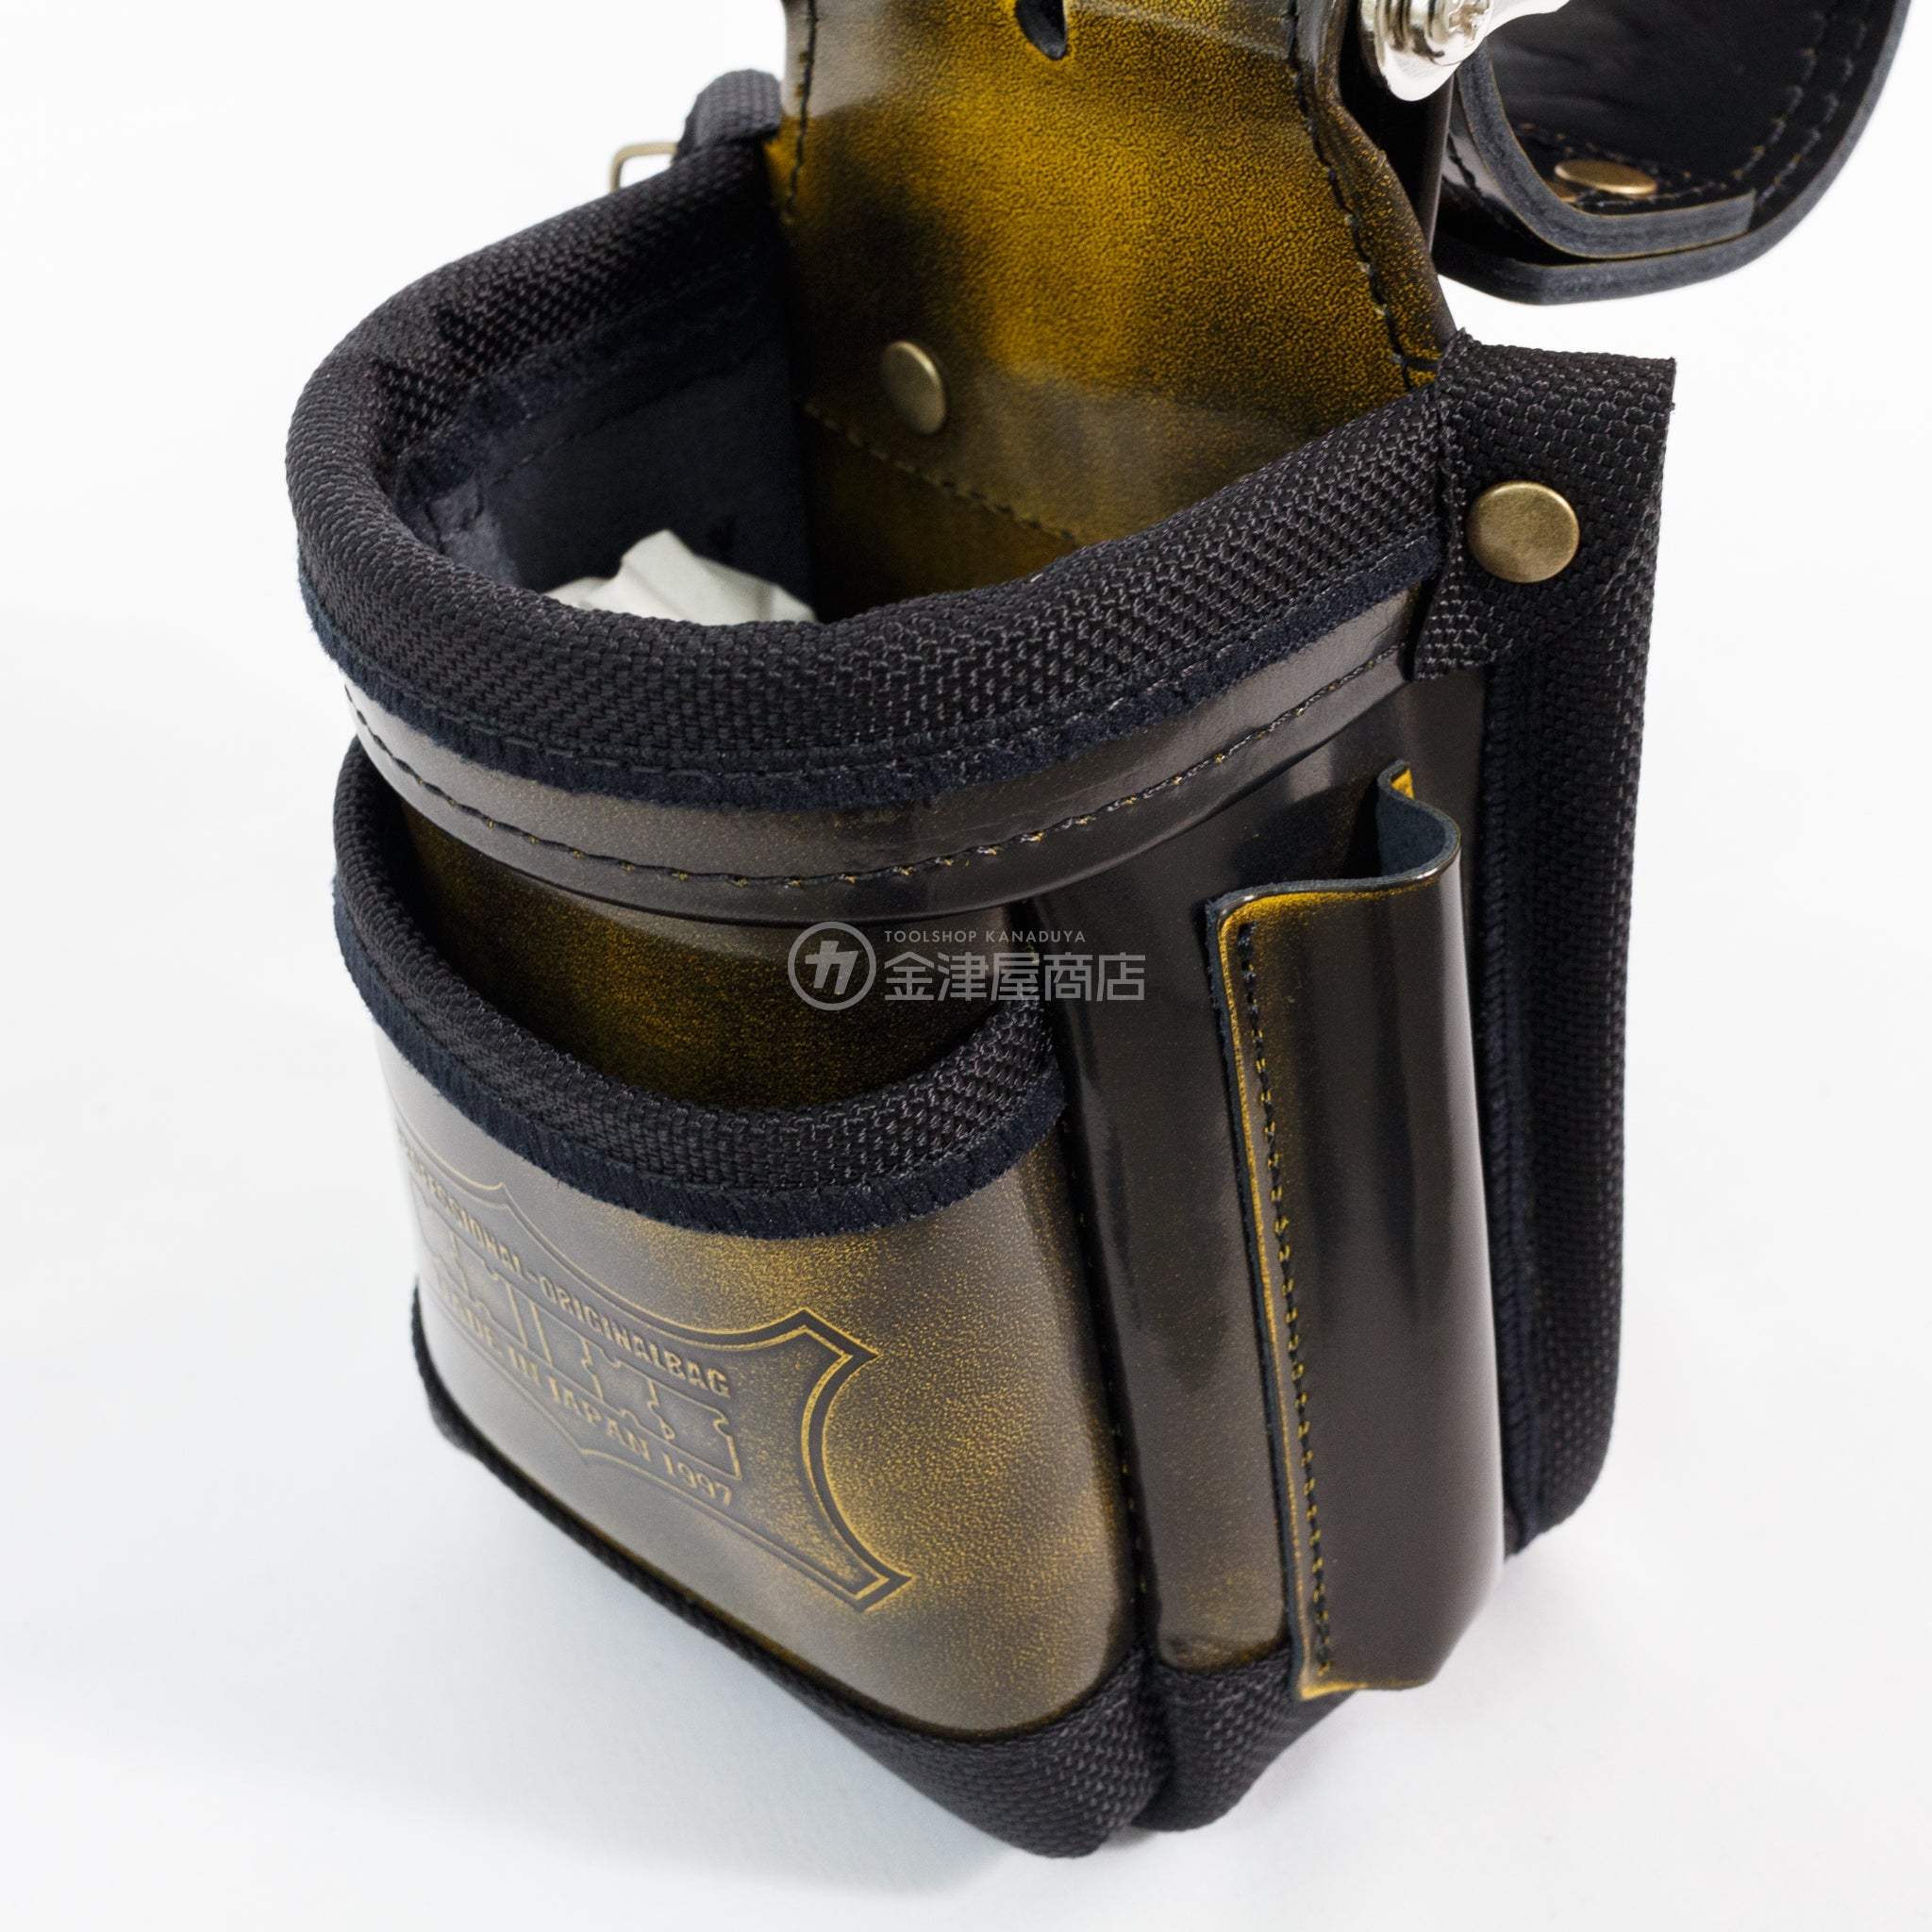 ニックス(KNICKS) アドバンガラス革 小物腰袋 ADV-201VADXメンテナンス